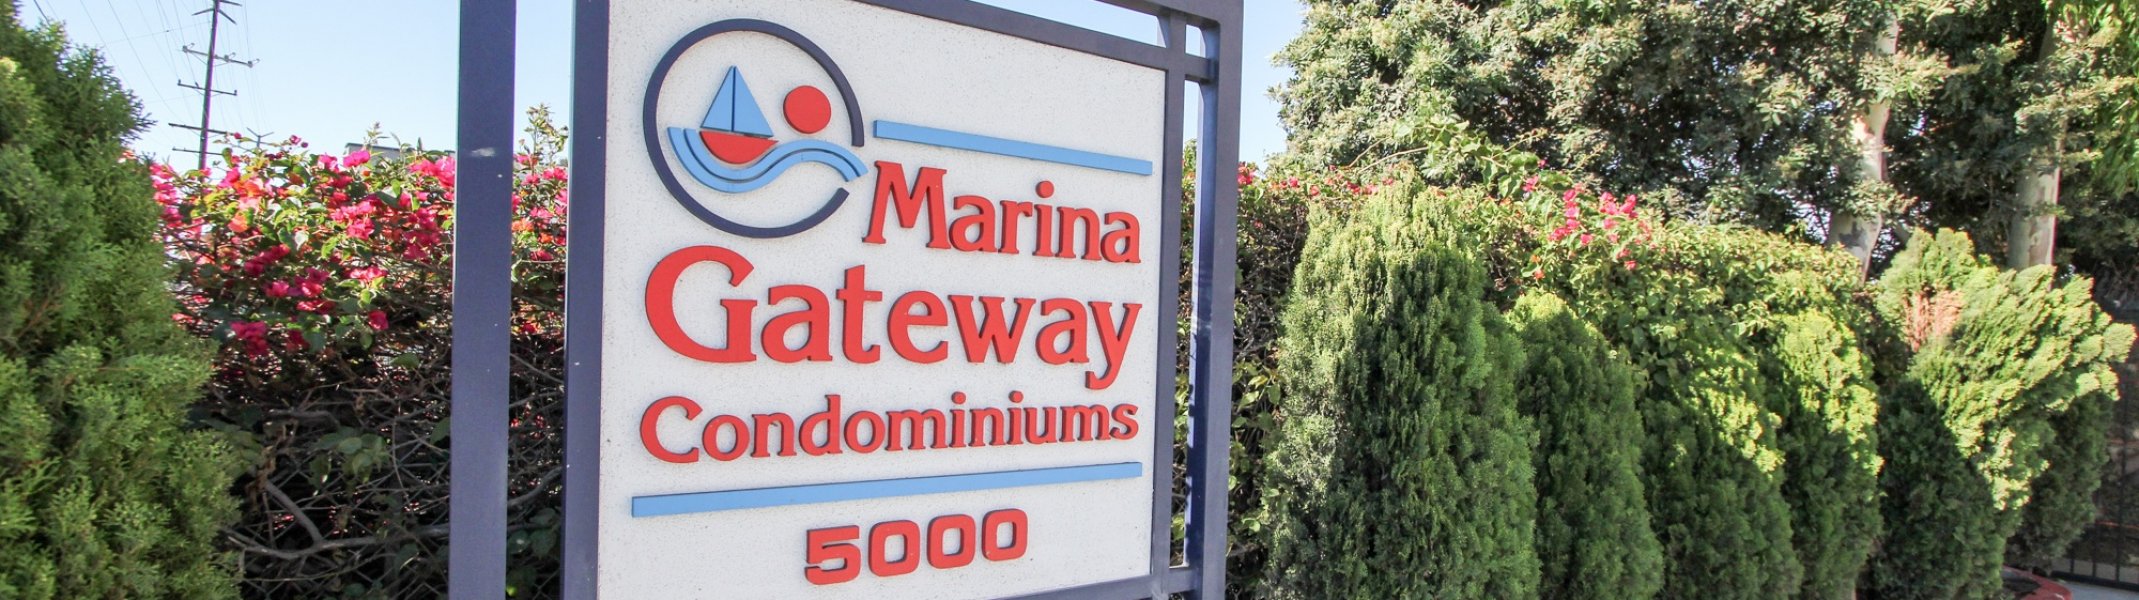 Marina Gateway